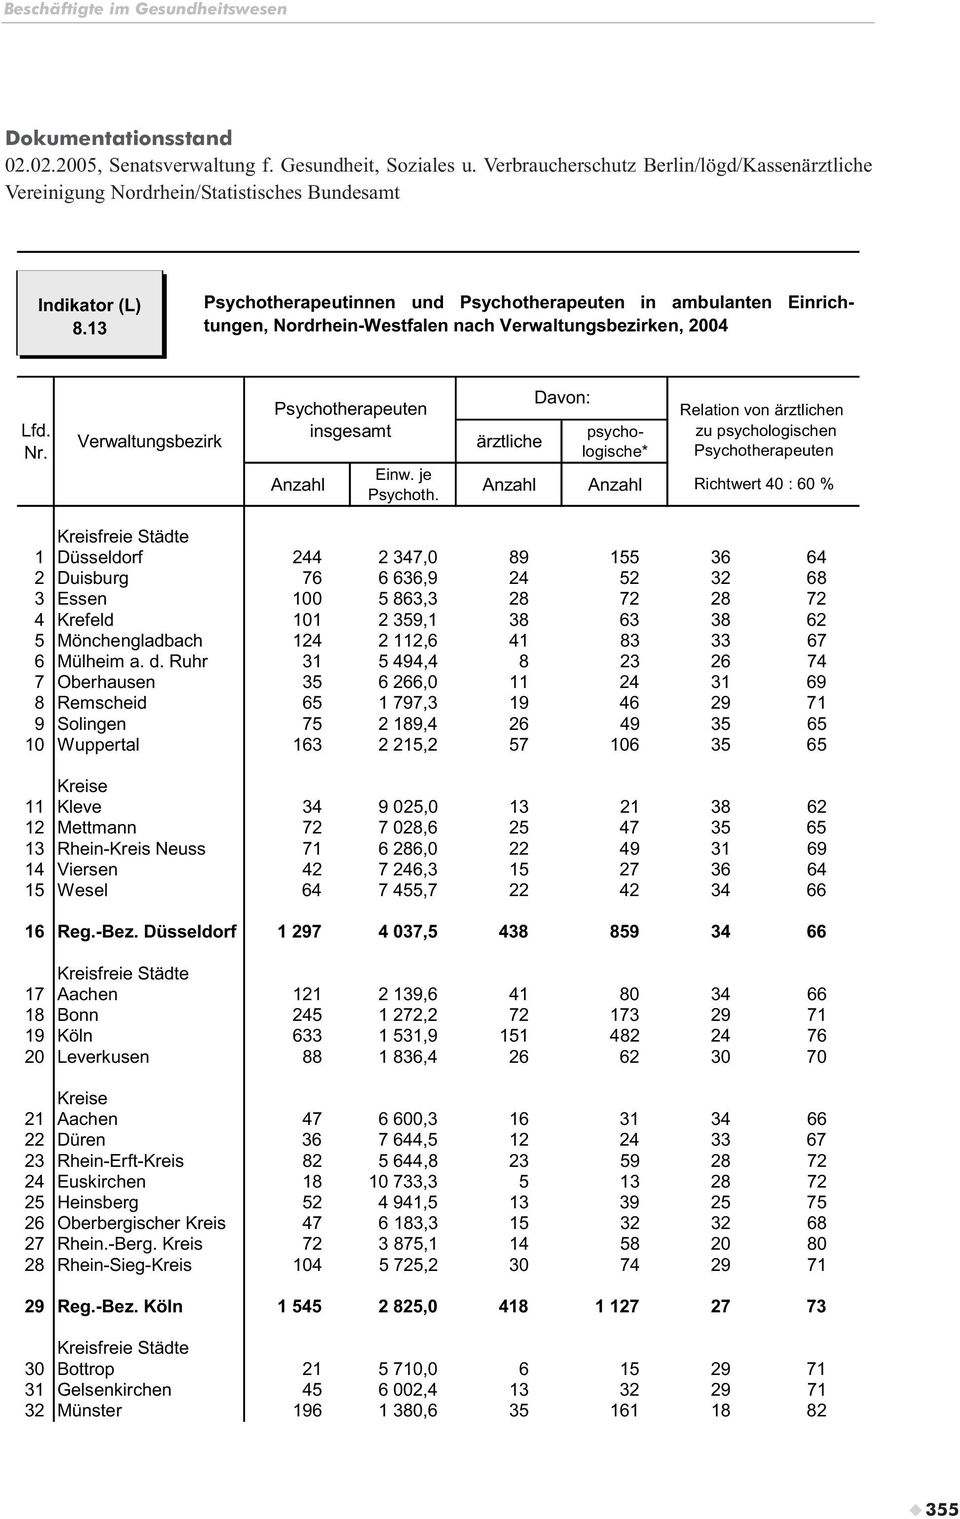 13 Psychotherapeutinnen und in ambulanten Einrichtungen, Nordrhein-Westfalen nach Verwaltungsbezirken, 2004 Lfd. Nr.